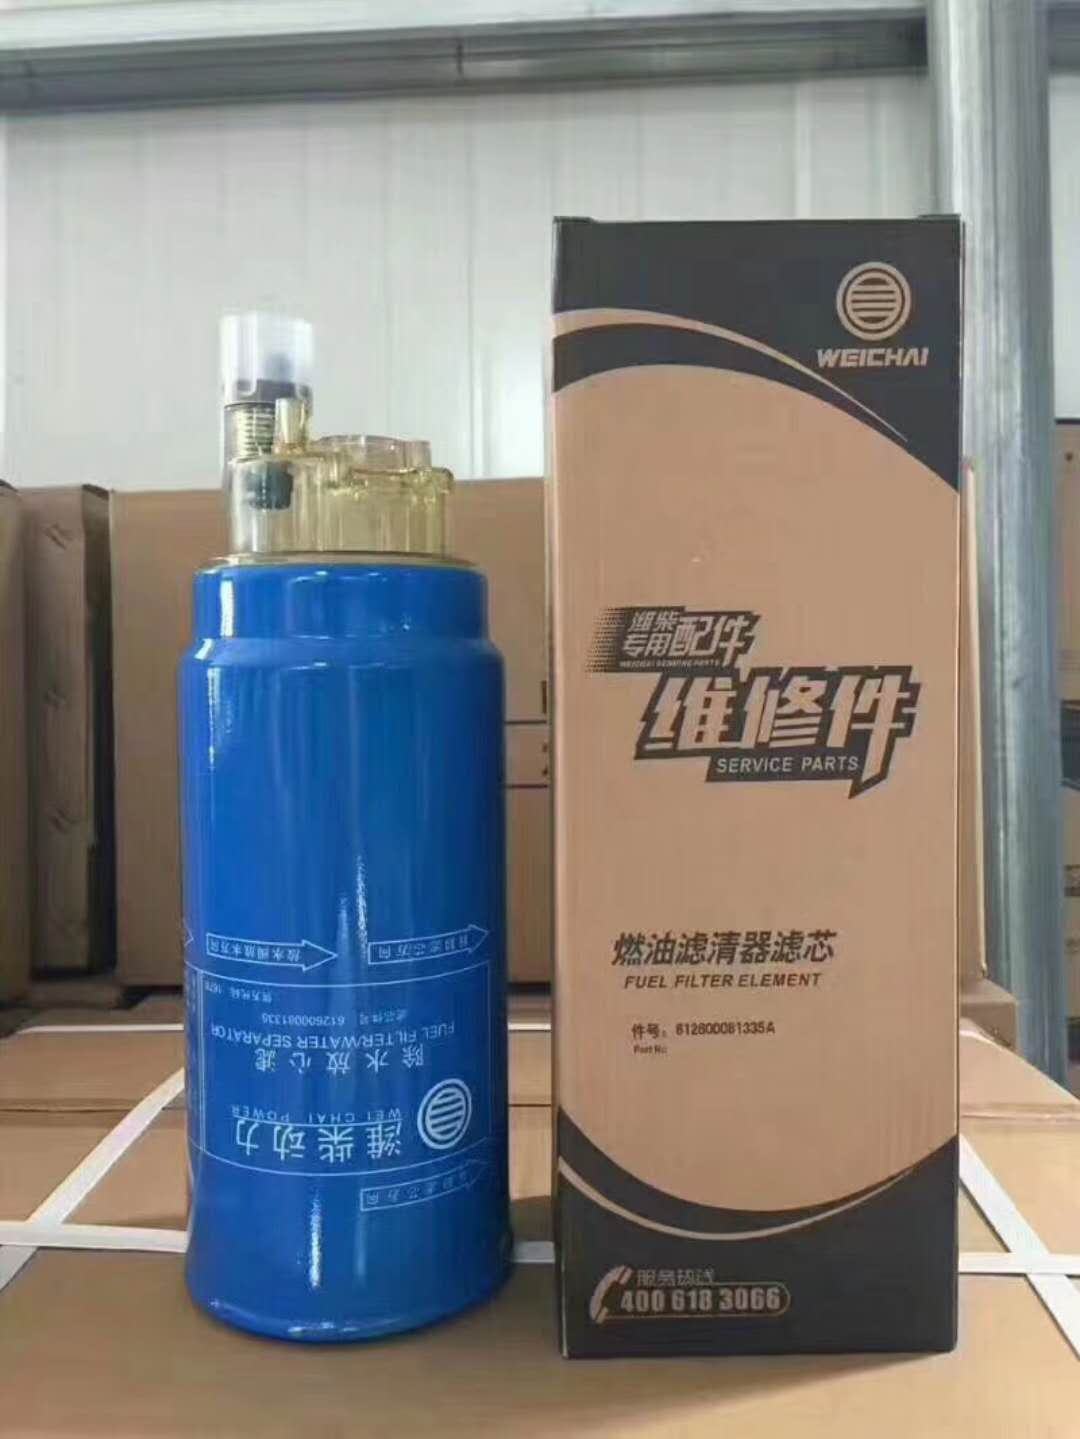 Weichai fuel element filter